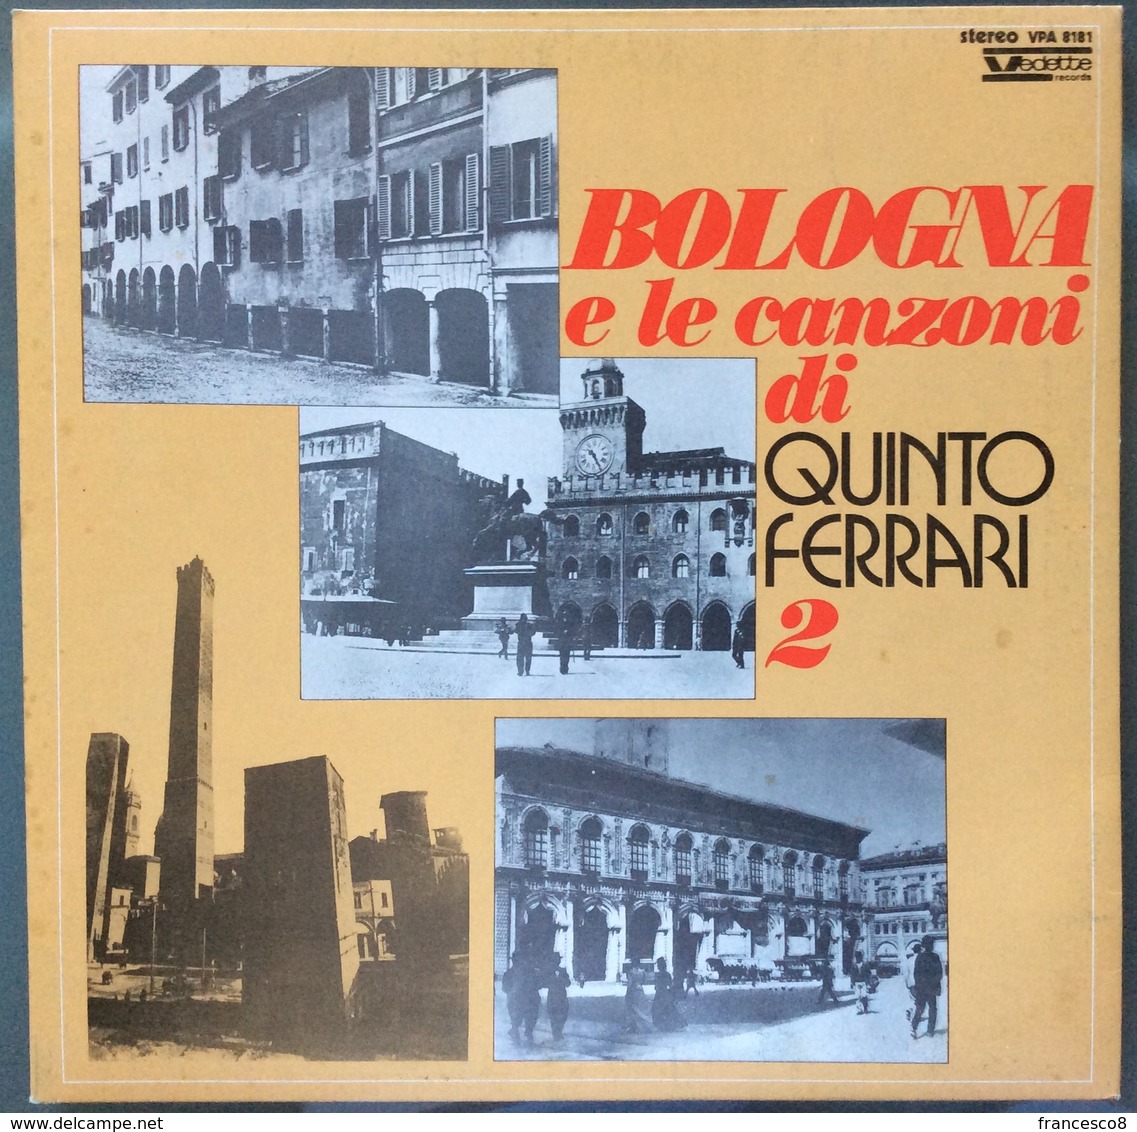 LP 33 - BOLOGNA E LE CANZONI DI QUINTO FERRARI 2 / Anno 1973 - Other - Italian Music